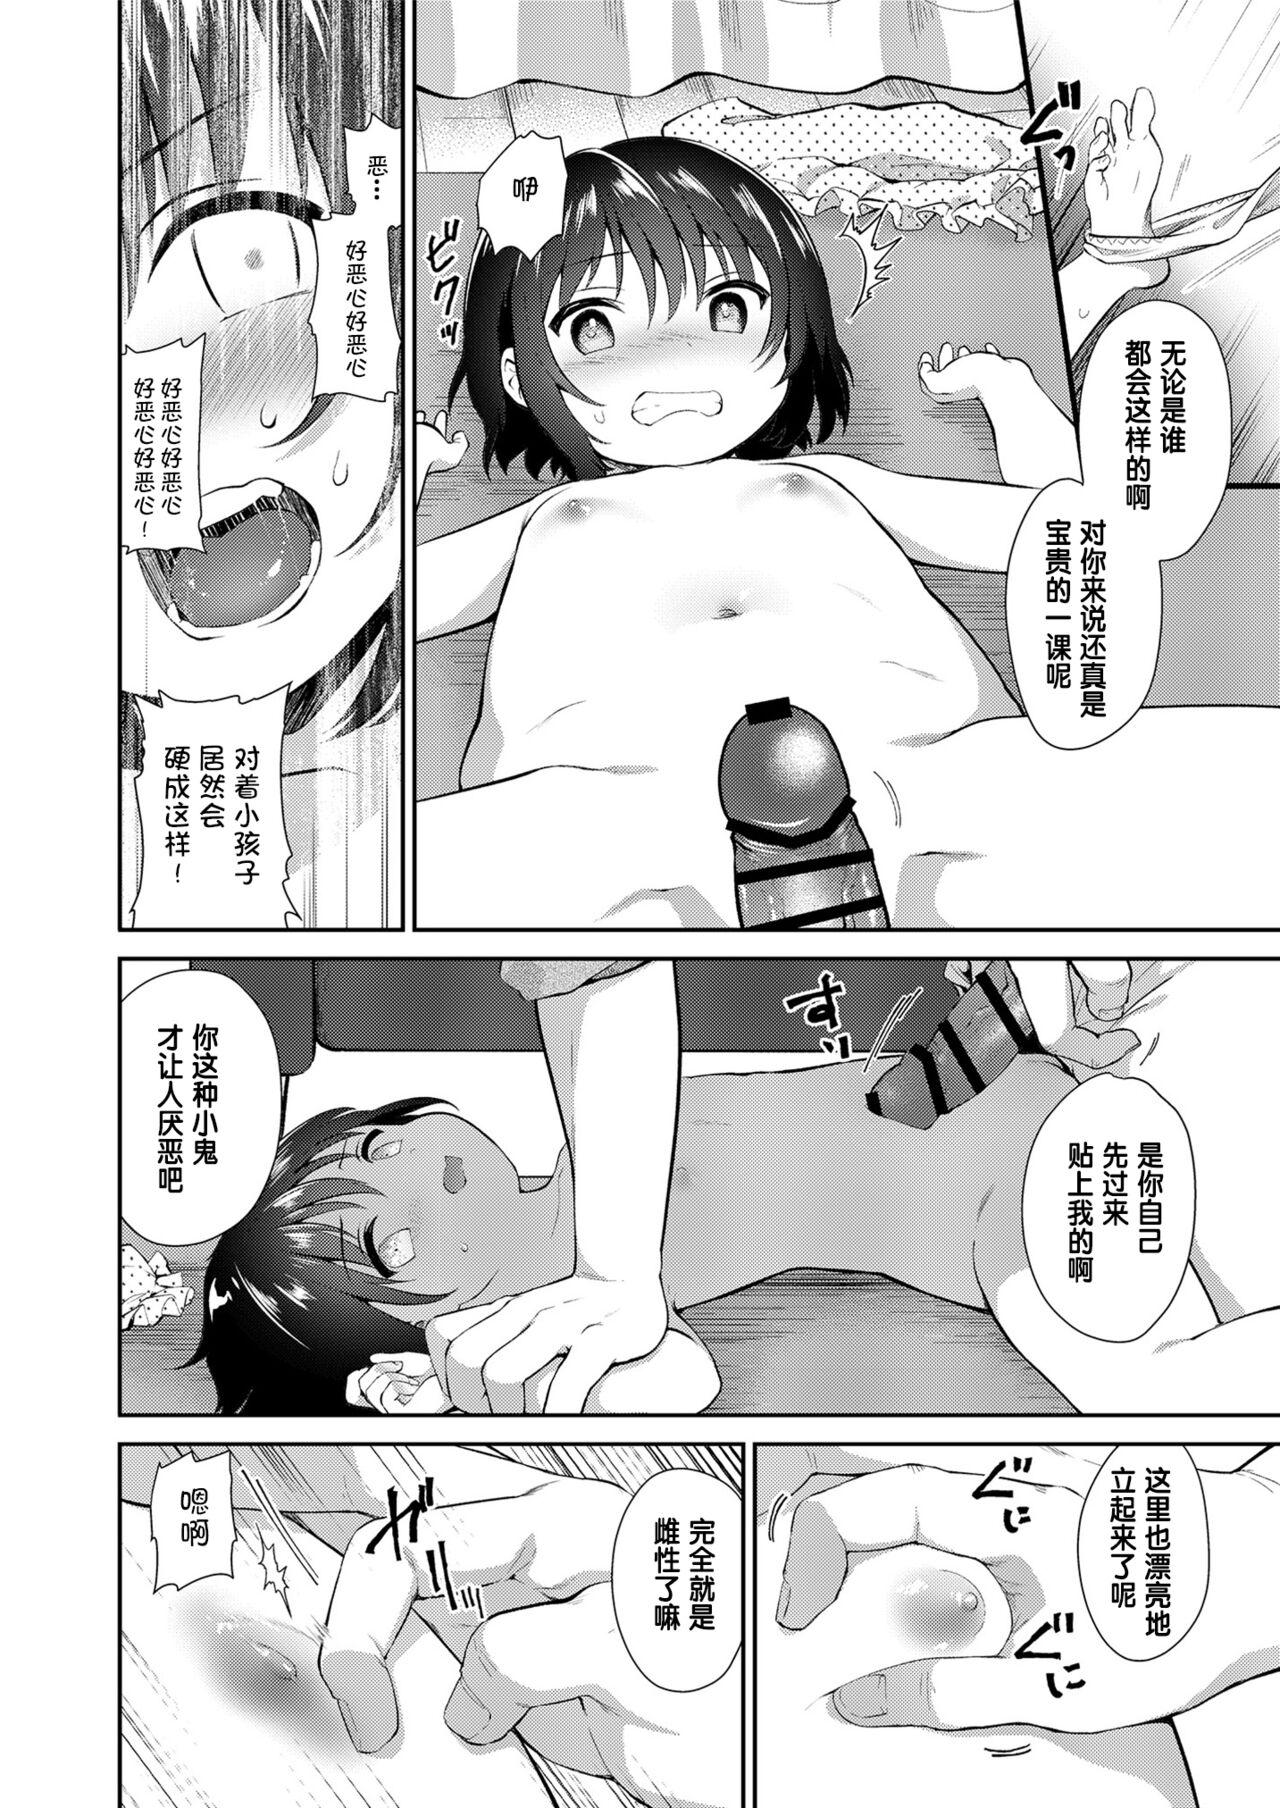 Stepbro Mei ga Warui kara Shikatanai. - Original Hymen - Page 8